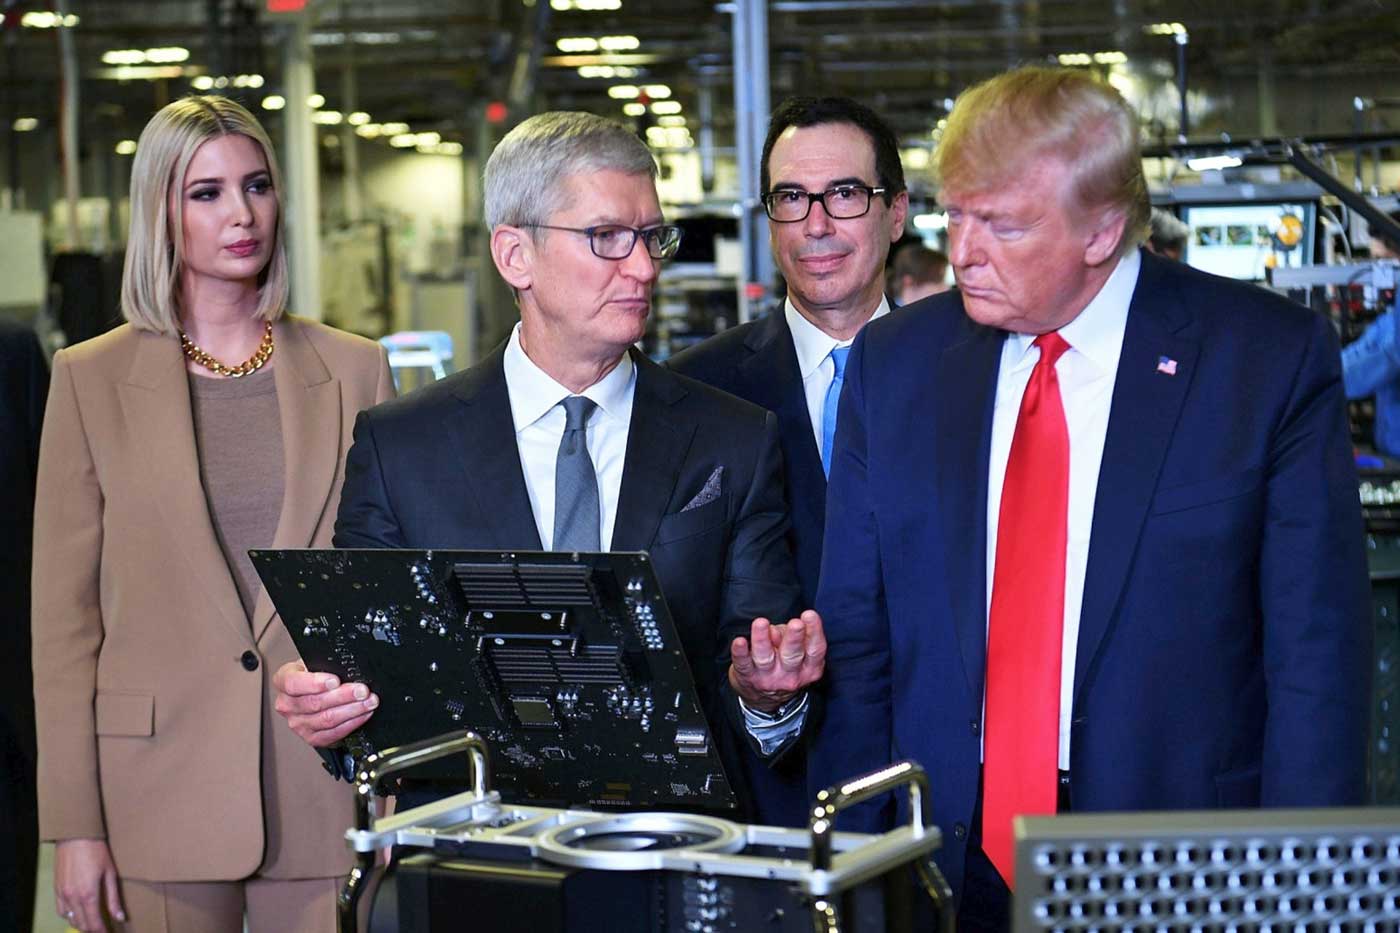 Президент США Дональд Трамп и руководитель Apple Тим Кук, с Иванкой Трамп и Секретарем Казначейства Стивеном Мнучином, на фабрике по производству компьютеров Flextronics в Остине, штат Техас, в 2019 году.